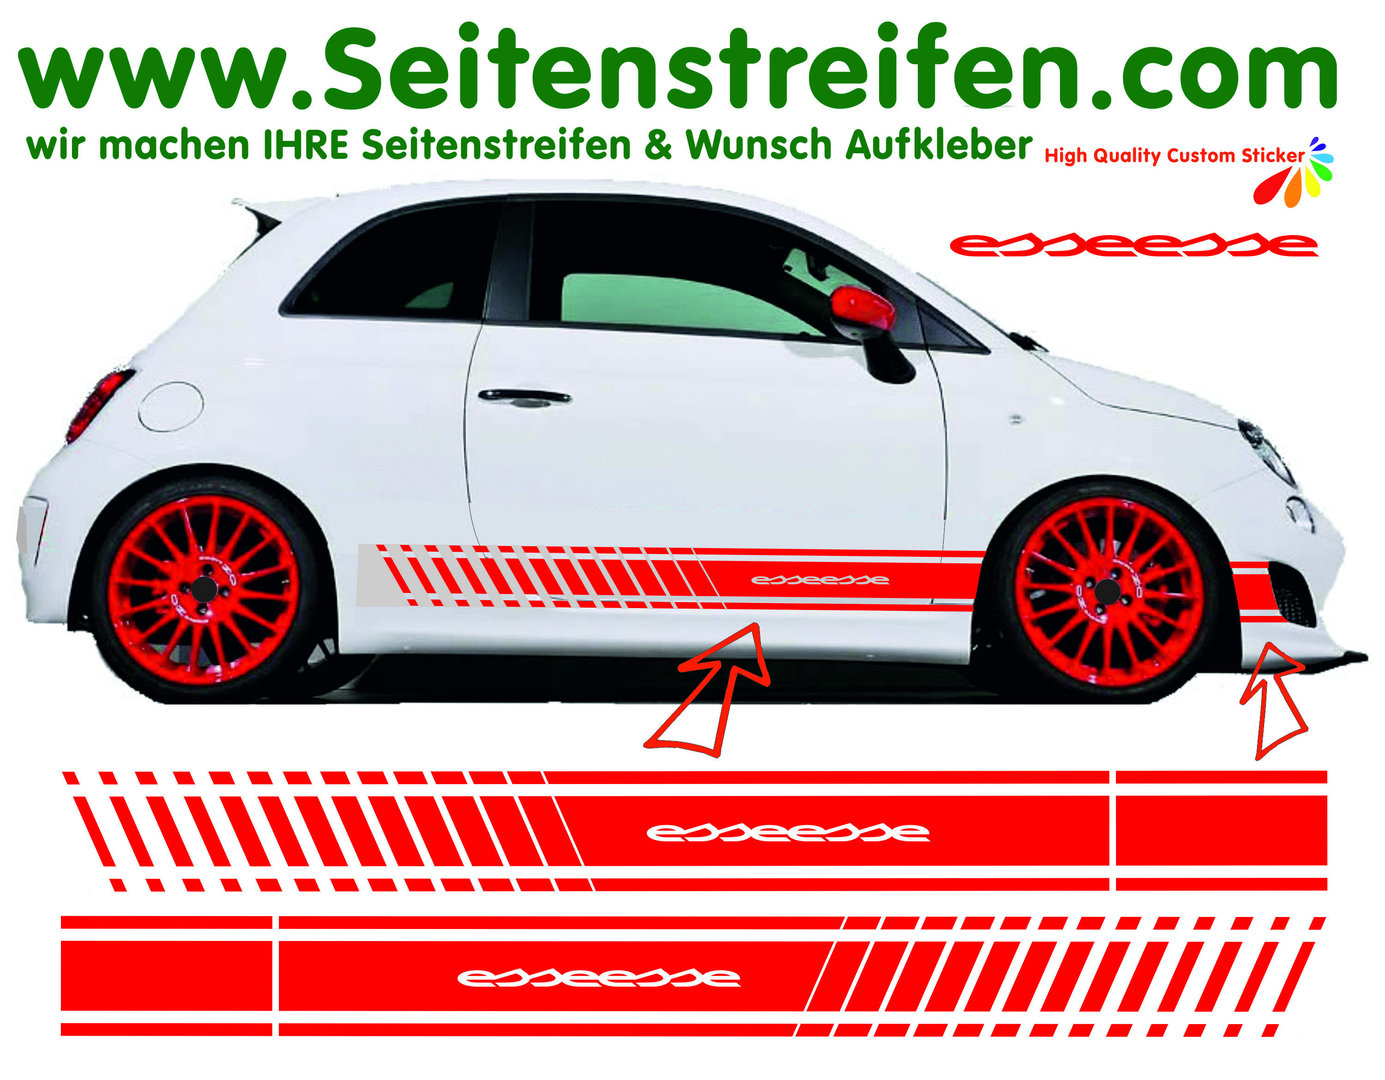 Fiat 500 - essessee EVO Seitenstreifen Aufkleber - Art.Nr.: 1144